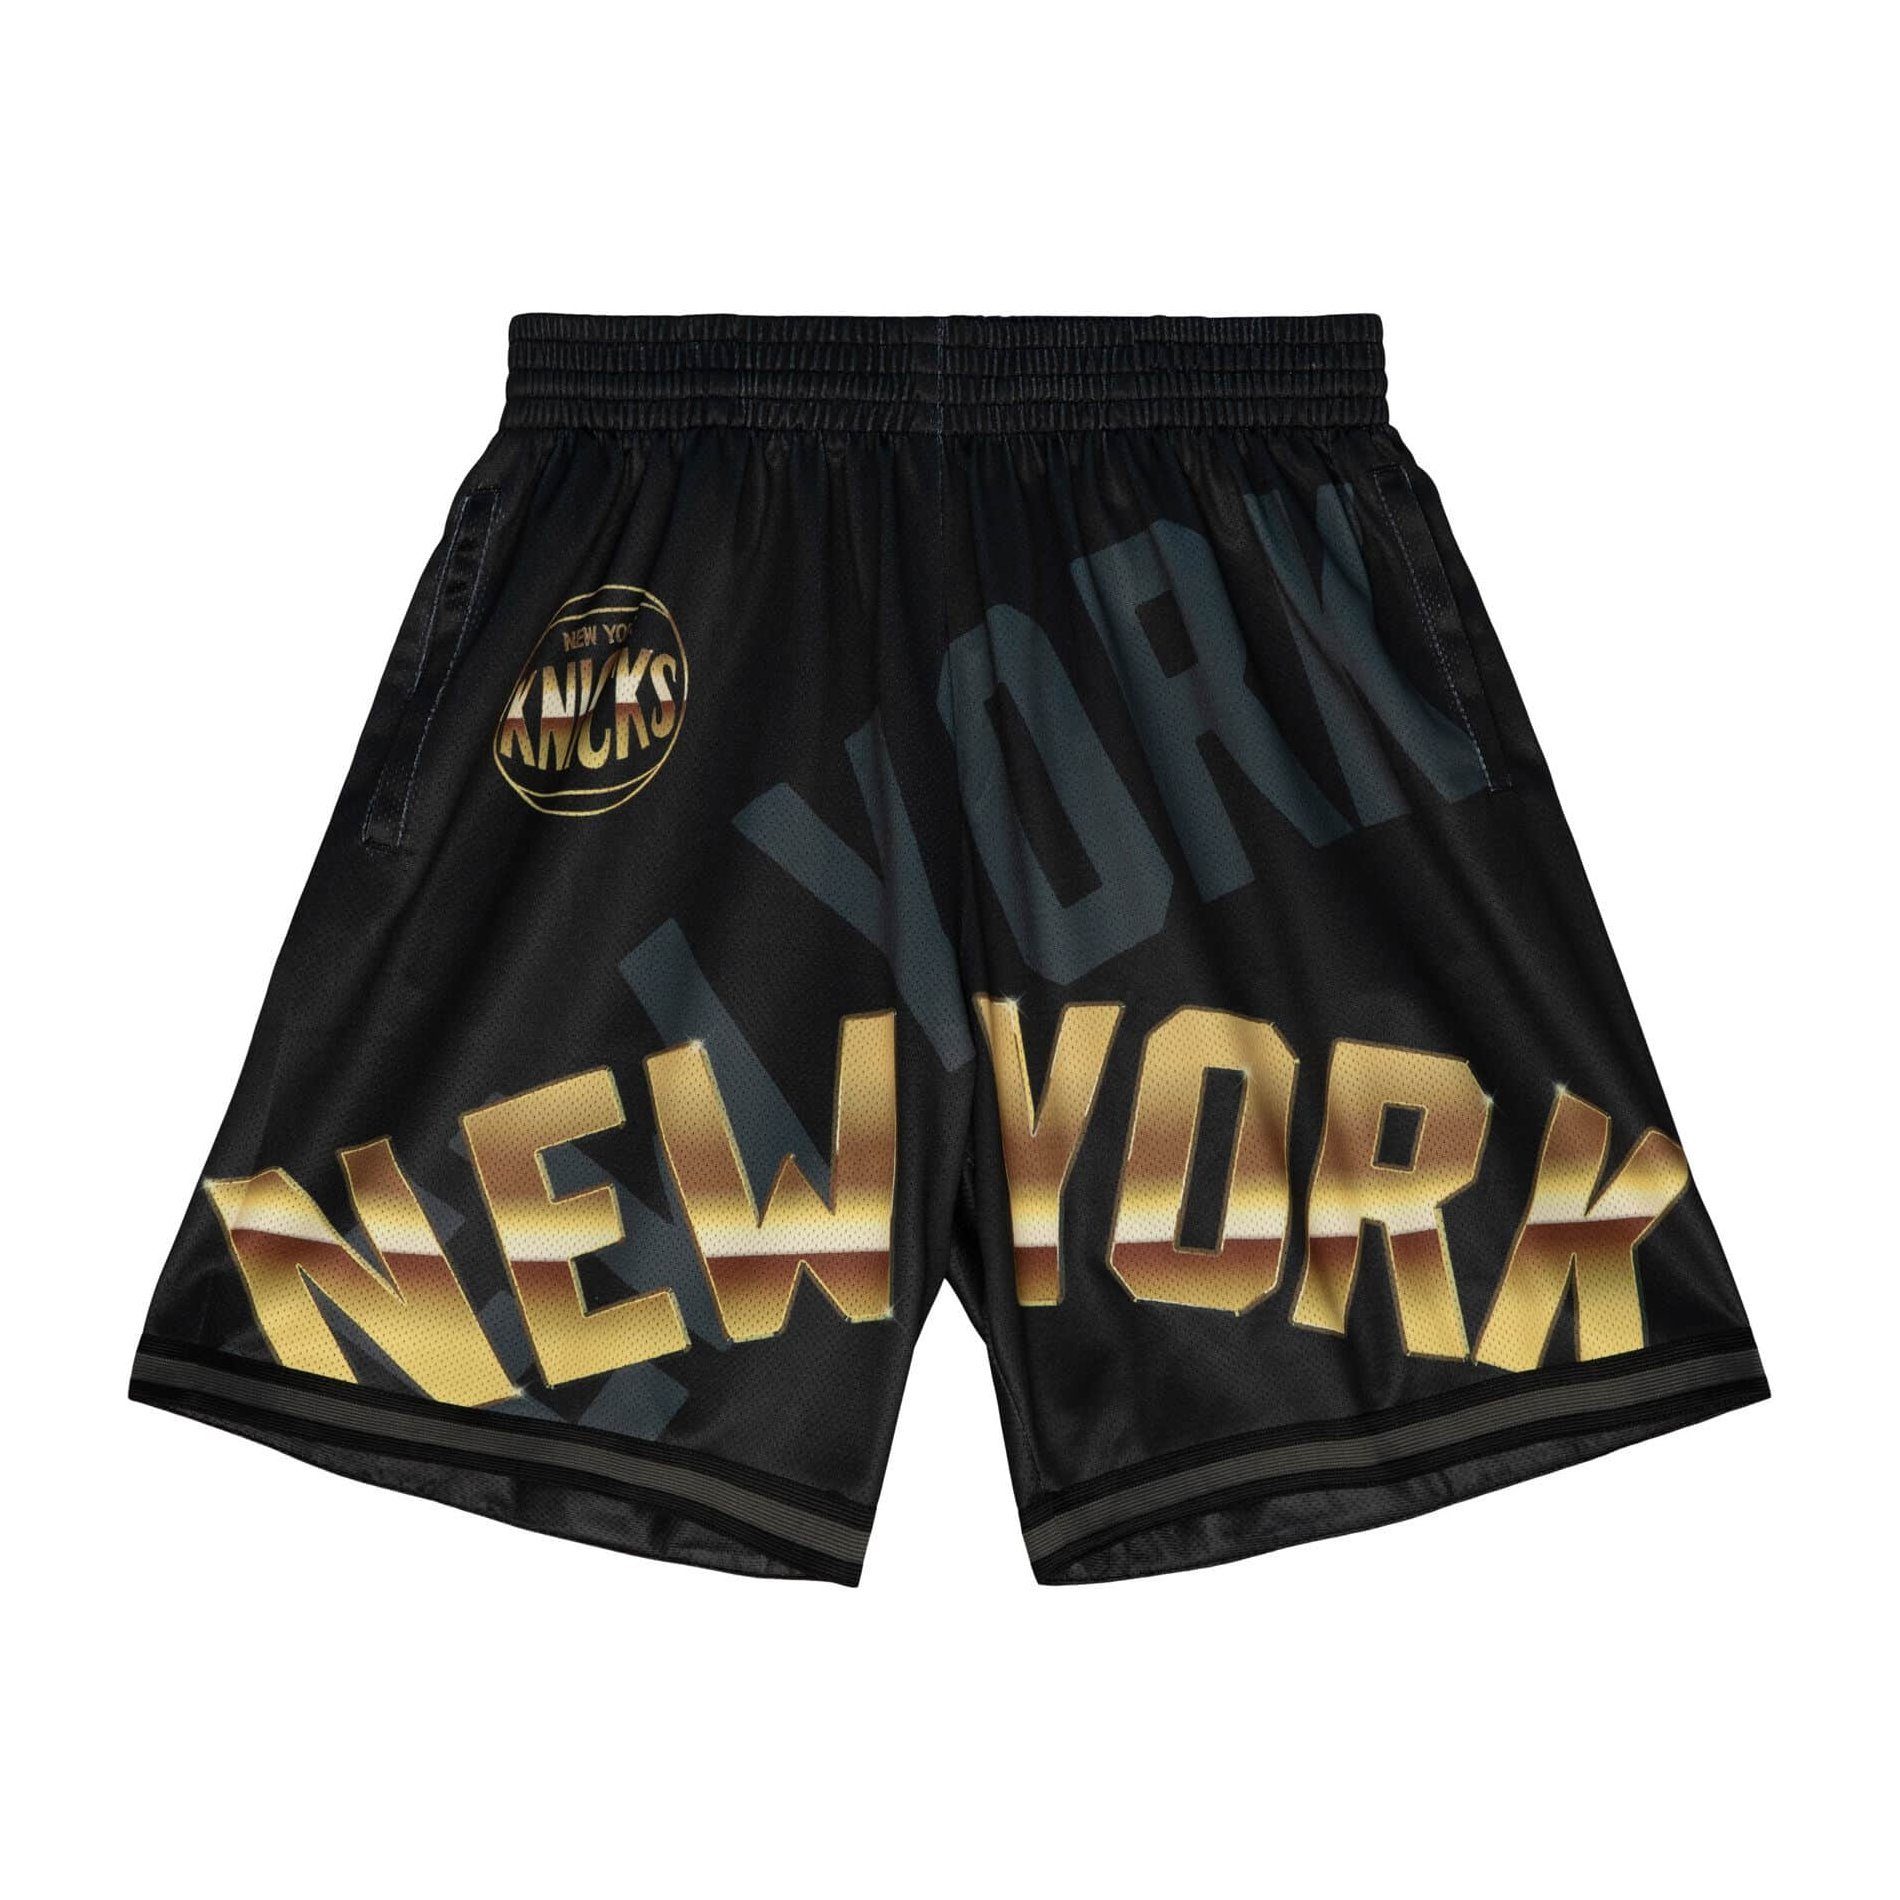 Ness Shorts York Fashion New Face Knicks Big 4.0 Mitchell &